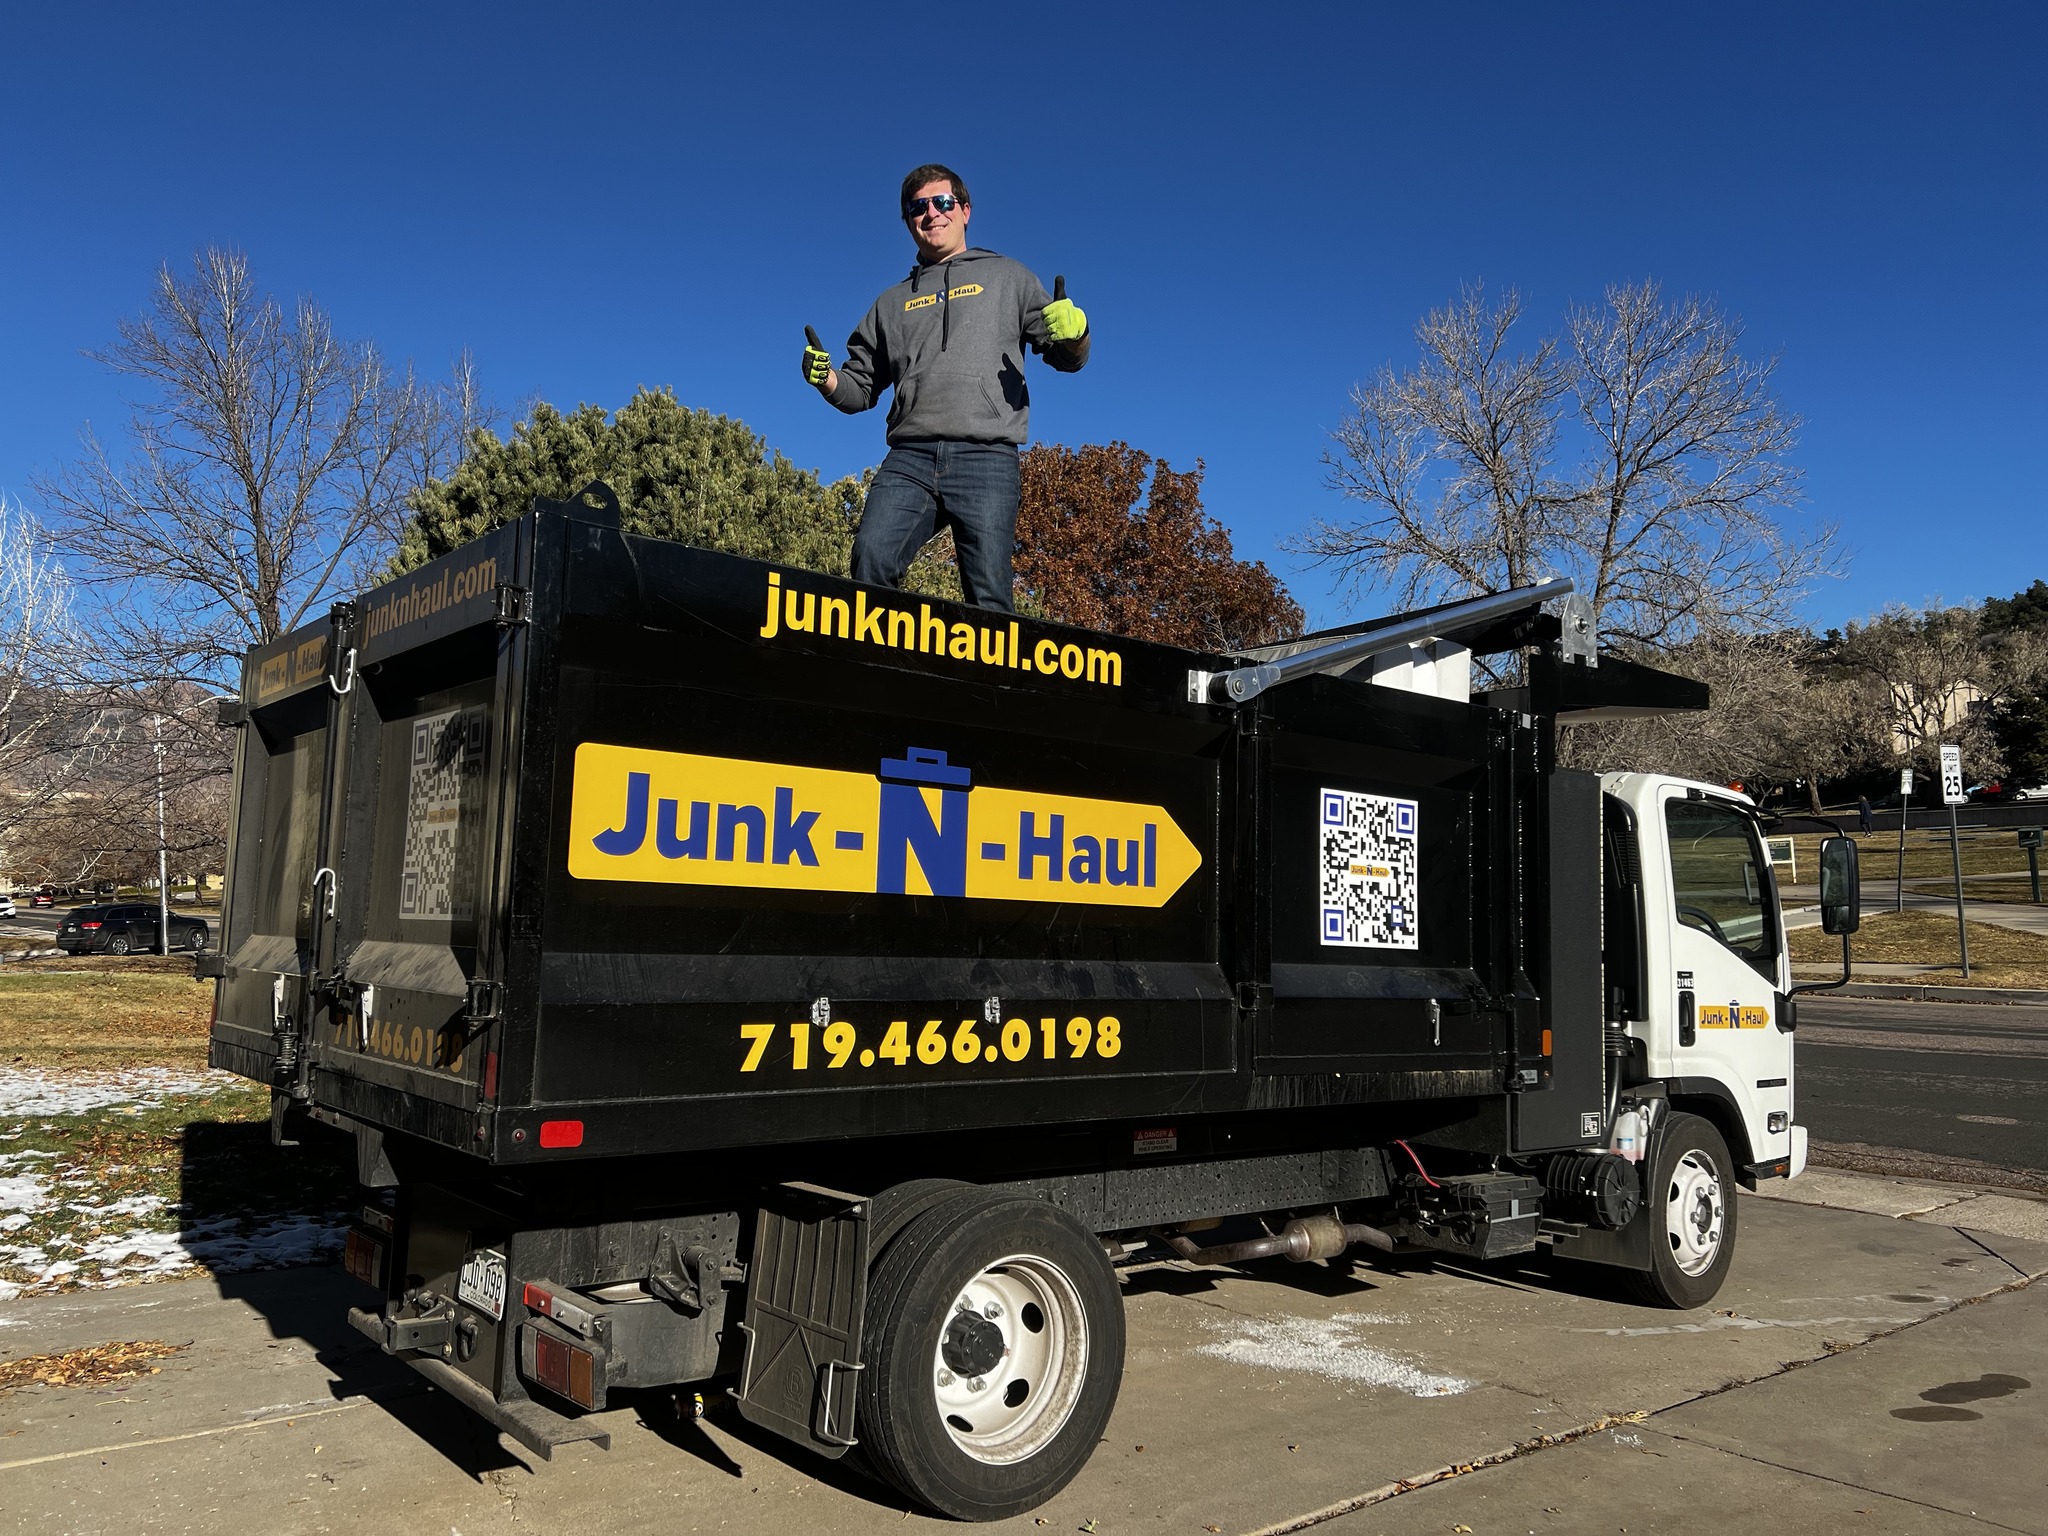 Junk-N-Haul employee with dump truck.